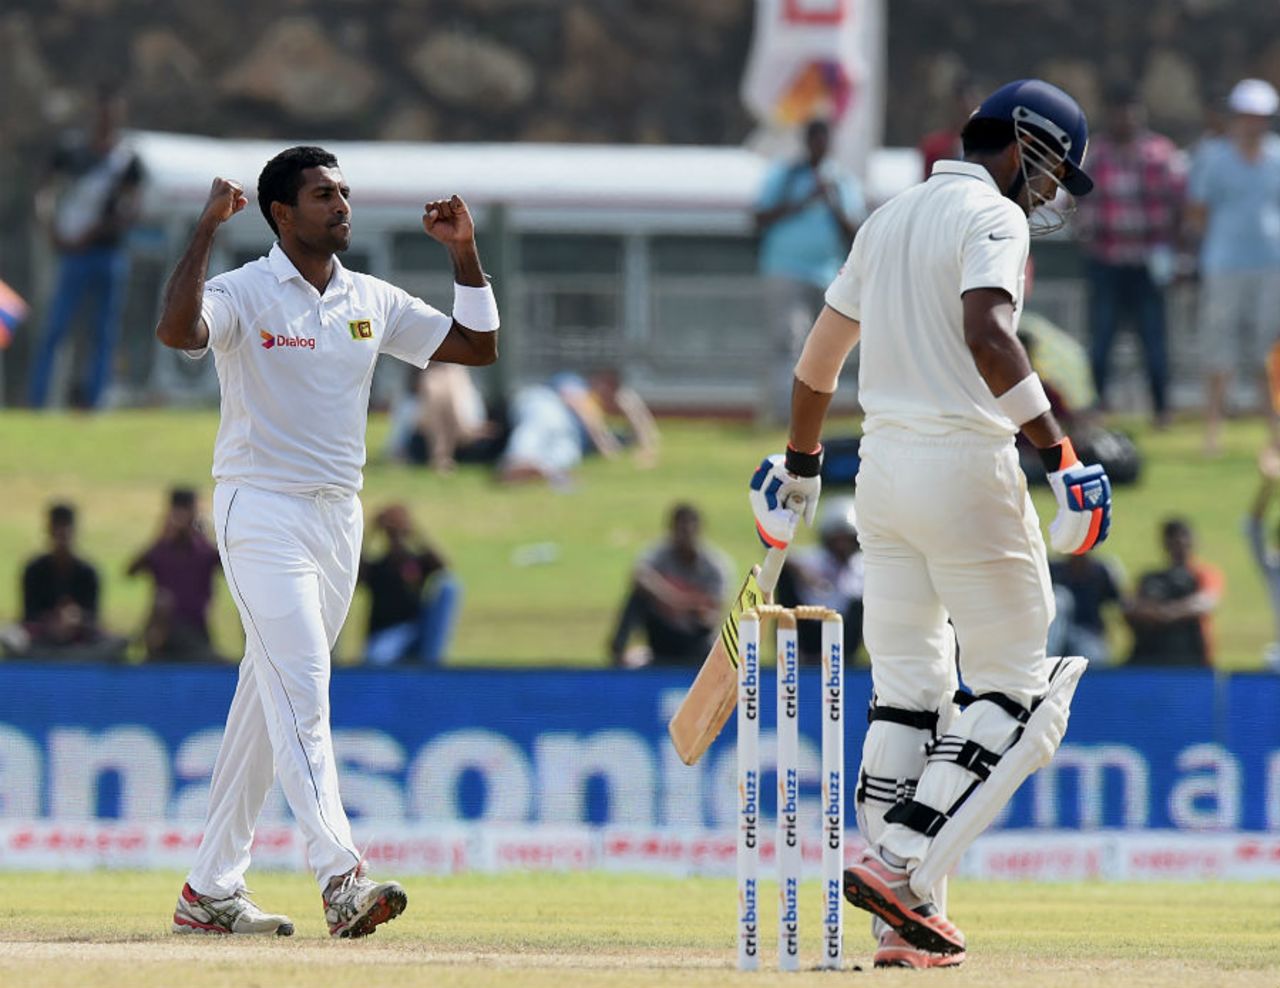 Dhammika Prasad dismissed KL Rahul early, Sri Lanka v India, 1st Test, Galle, 1st day, August 12, 2015